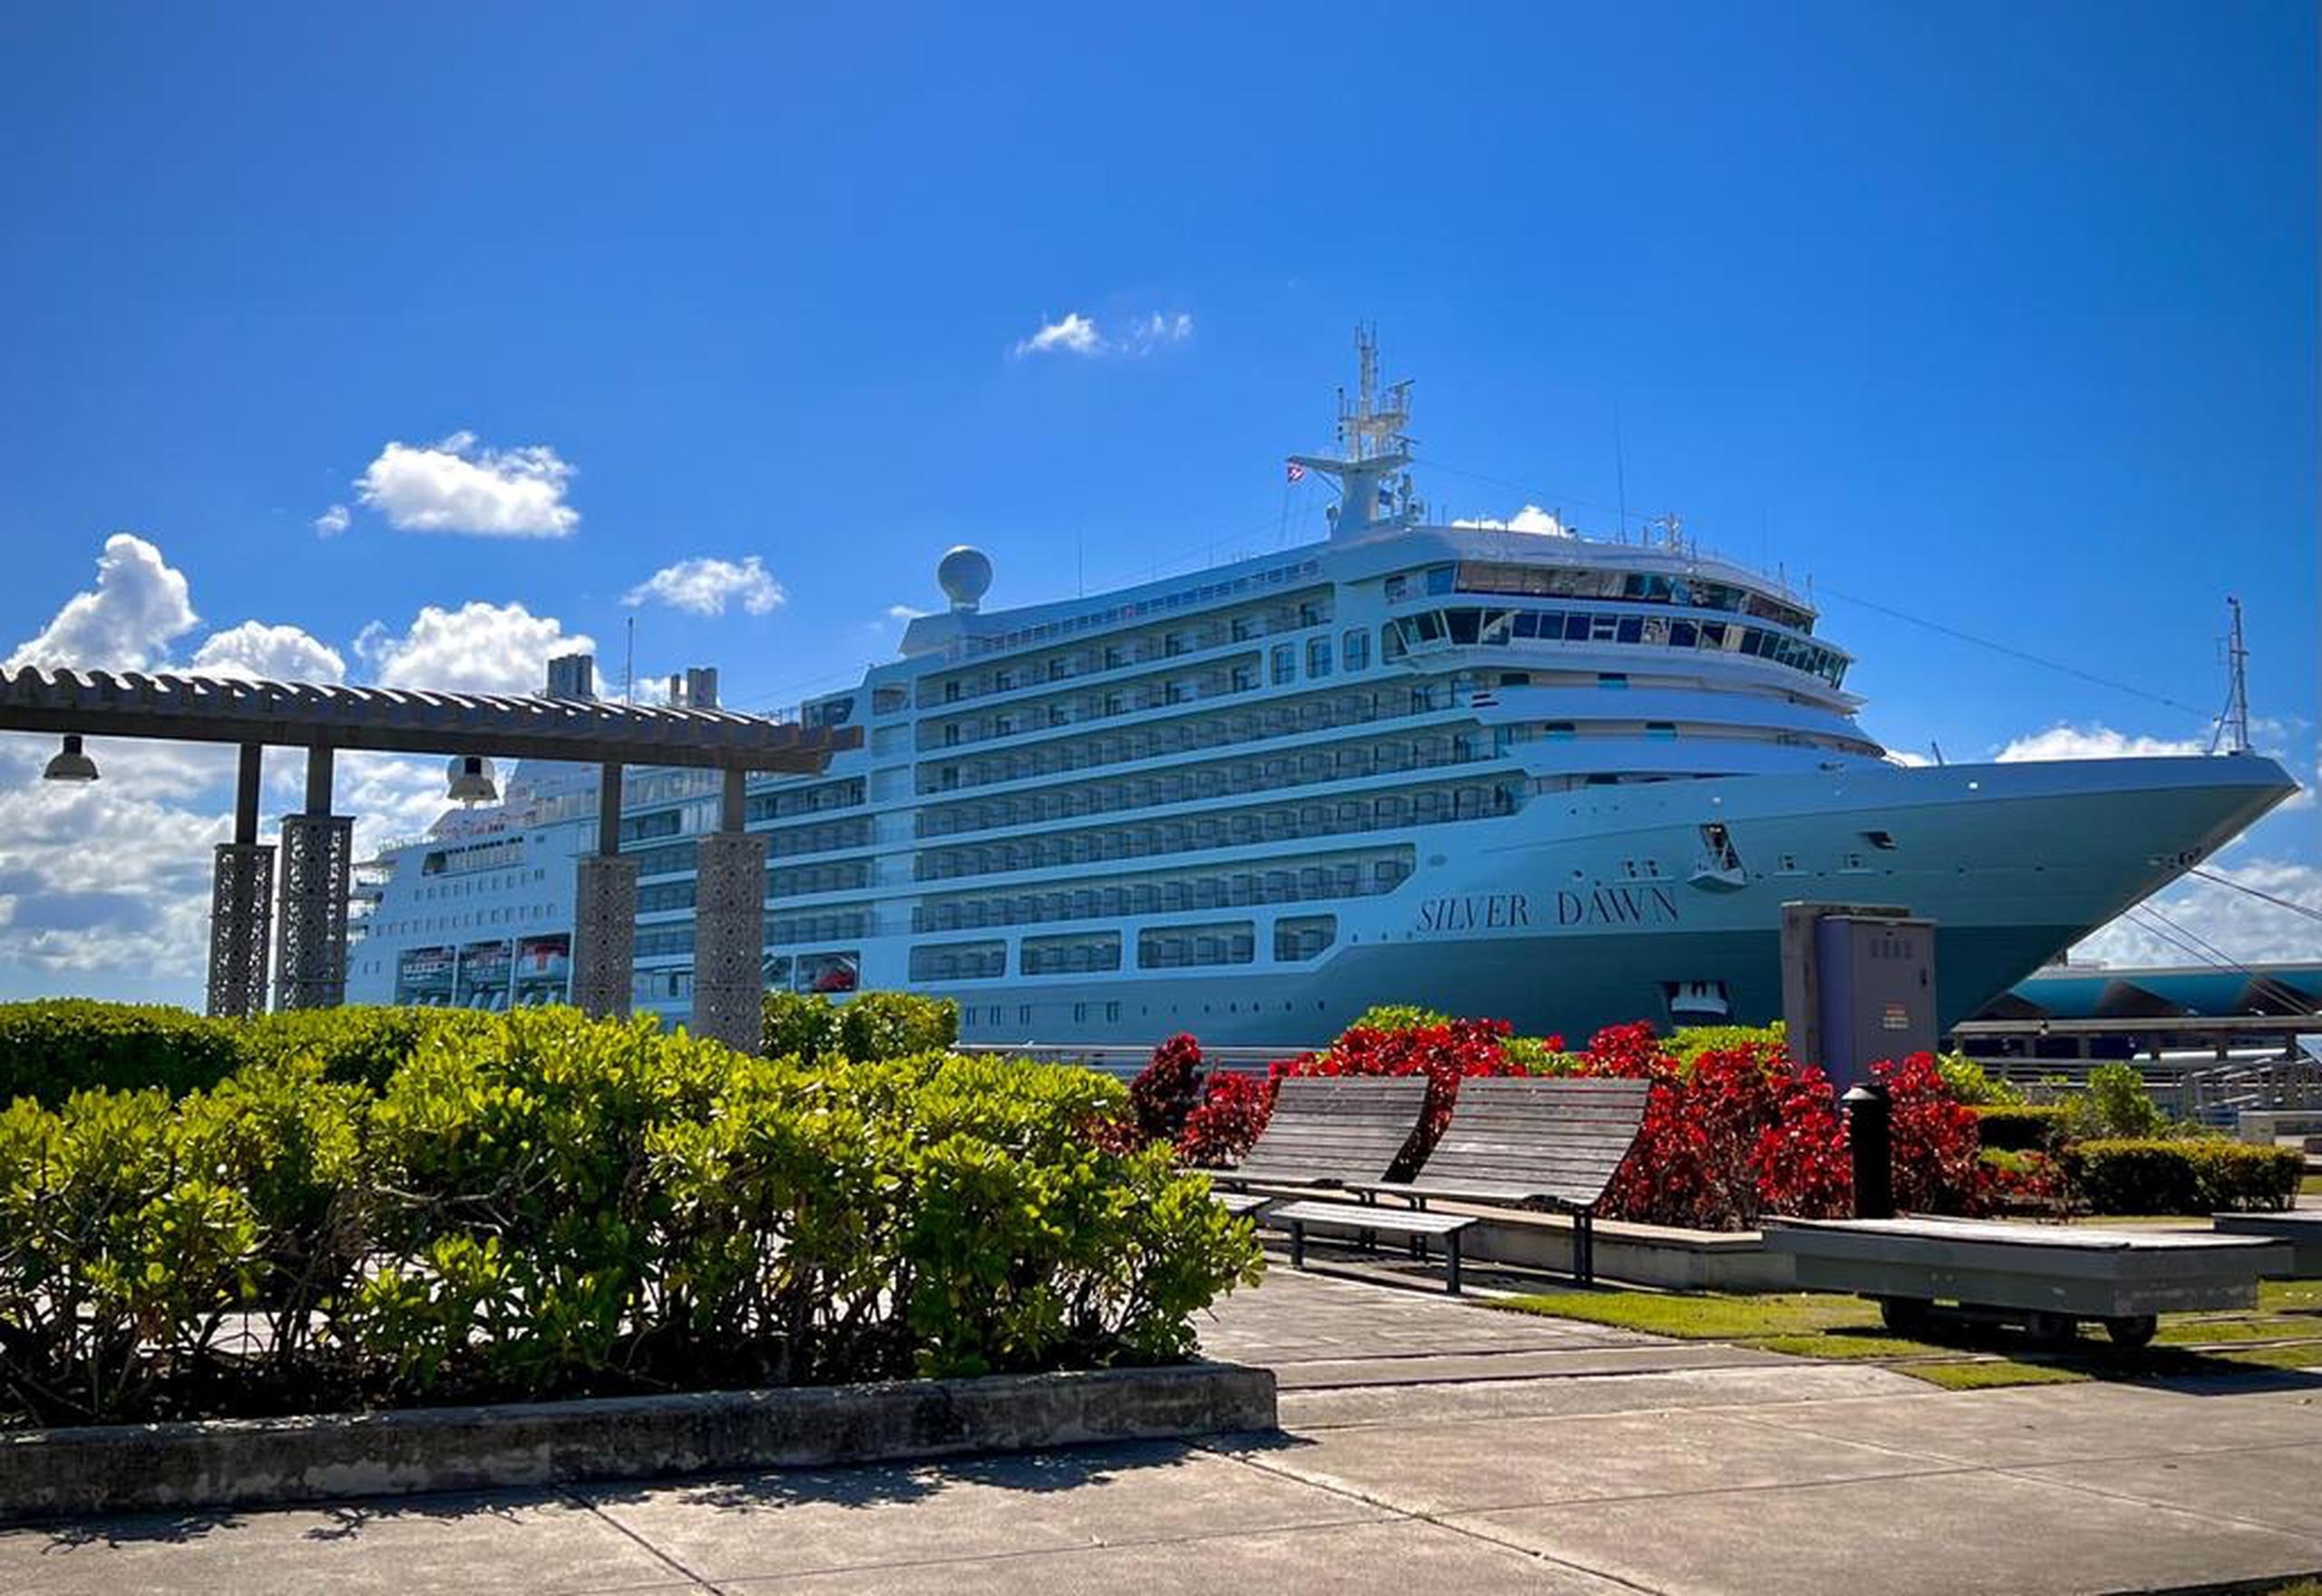 Fotografía del crucero Silver Dawn de Silversea Cruises, que ofrece opciones gastronomía gourmet, entretenimiento en vivo, casino y spa.